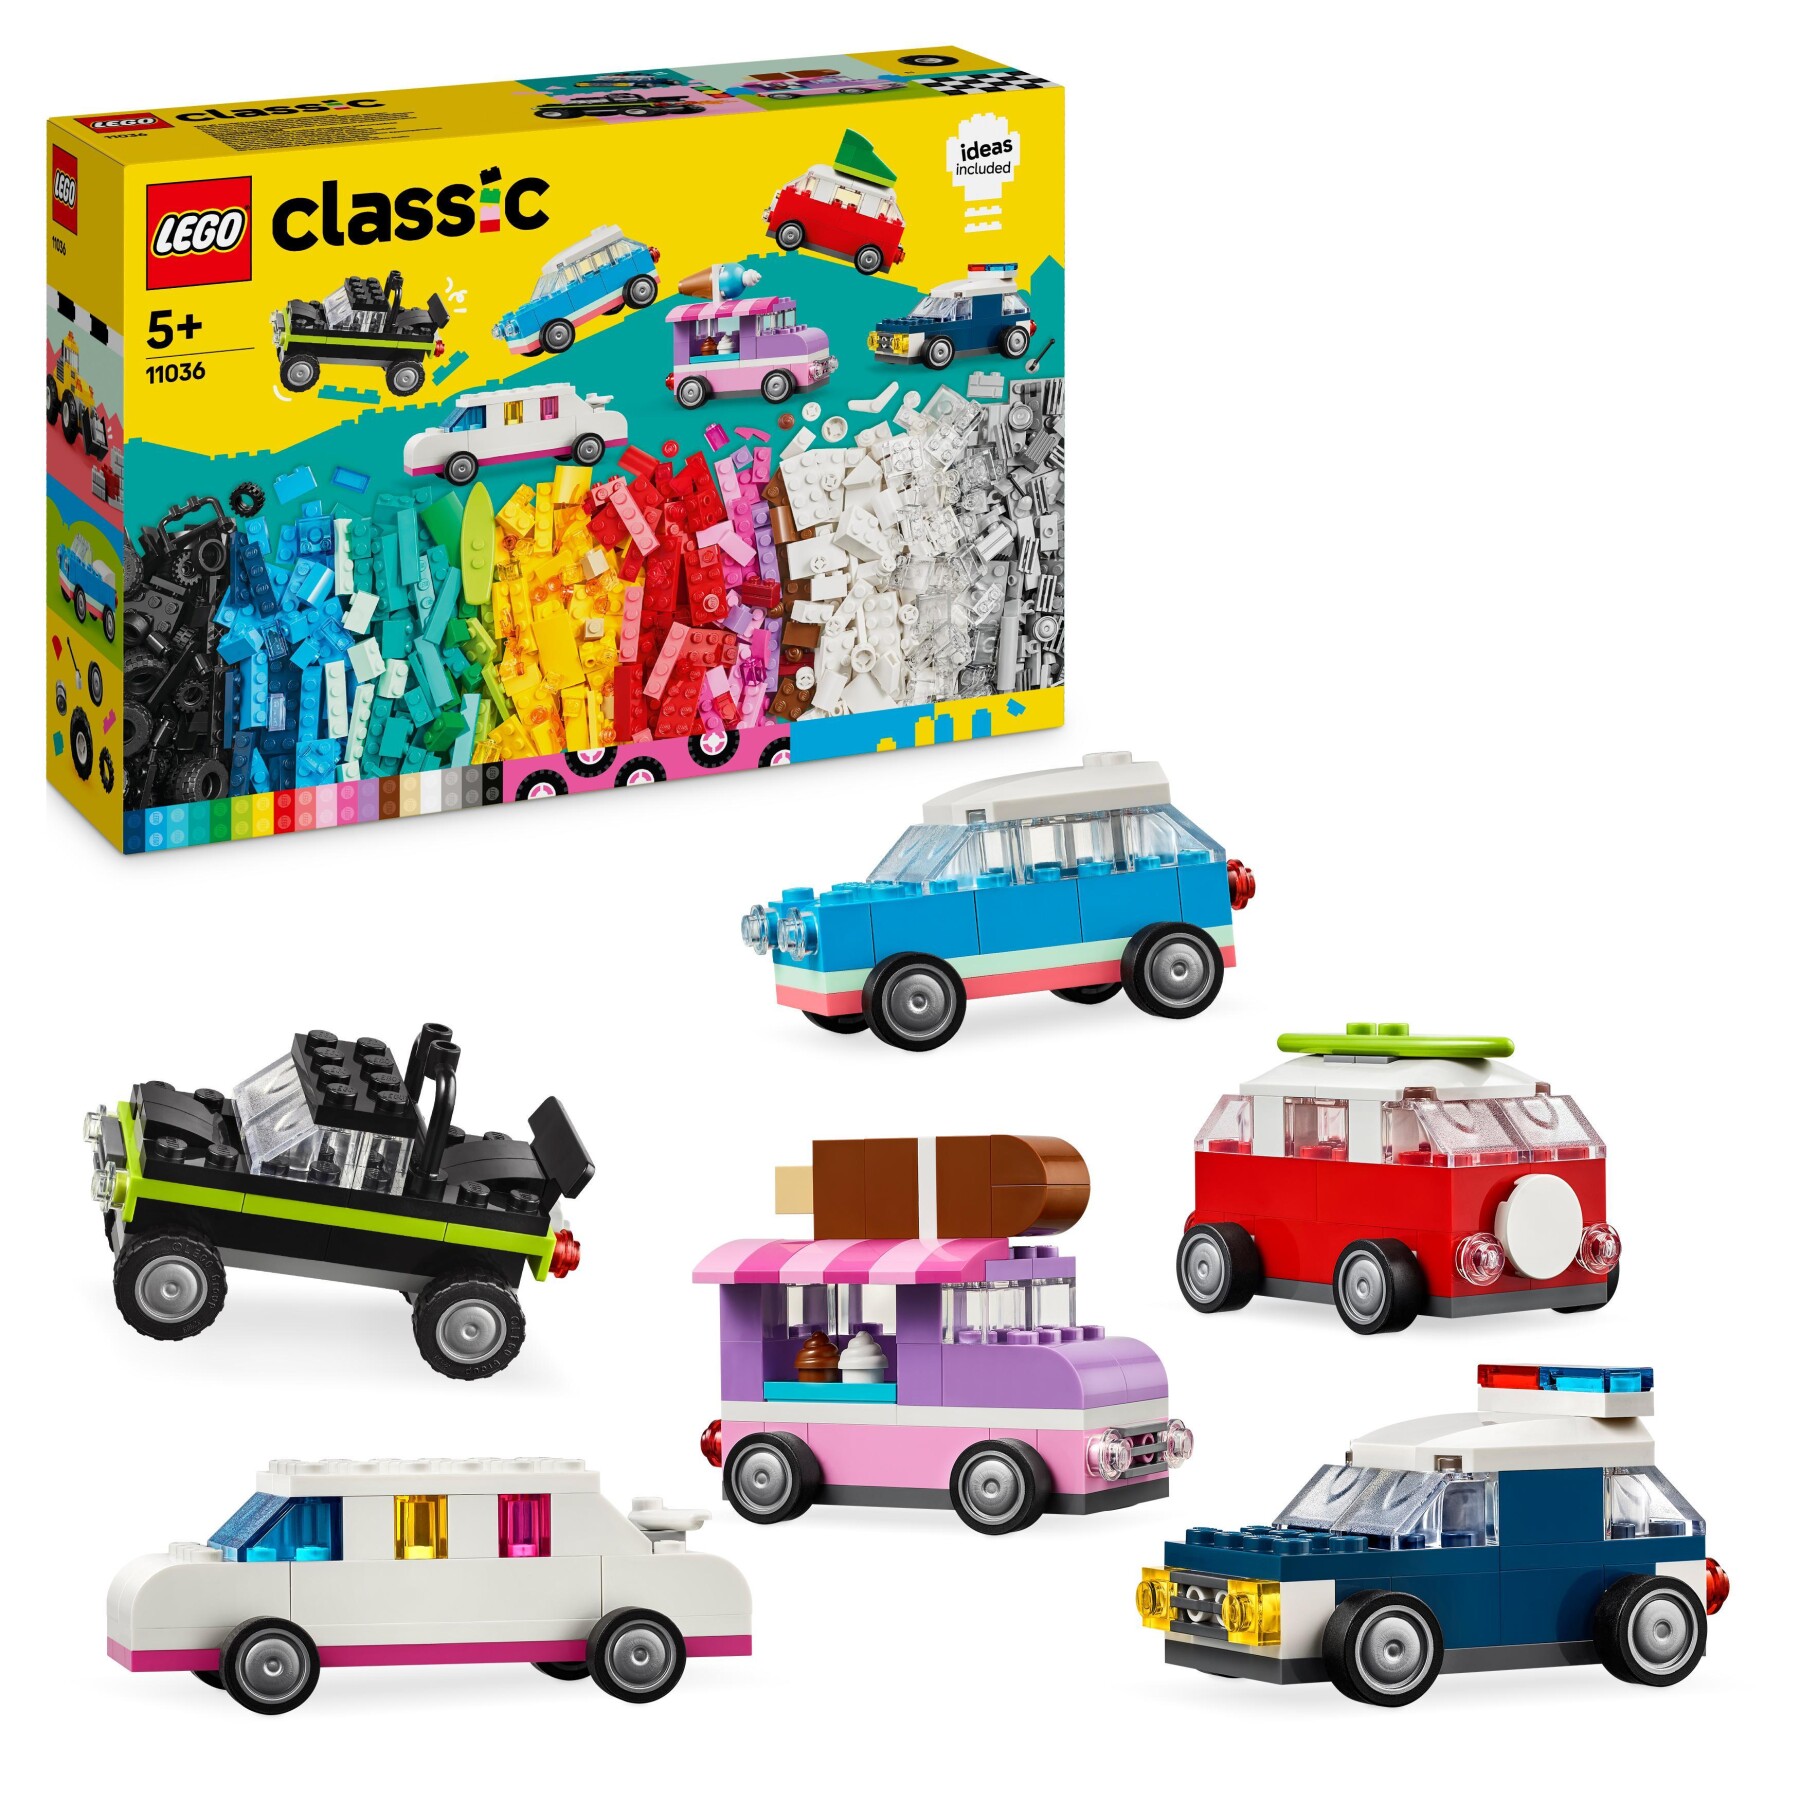 Lego classic 11036 veicoli creativi, modellini di auto in mattoncini, macchine giocattolo per bambini e bambine 5+ anni - LEGO CLASSIC